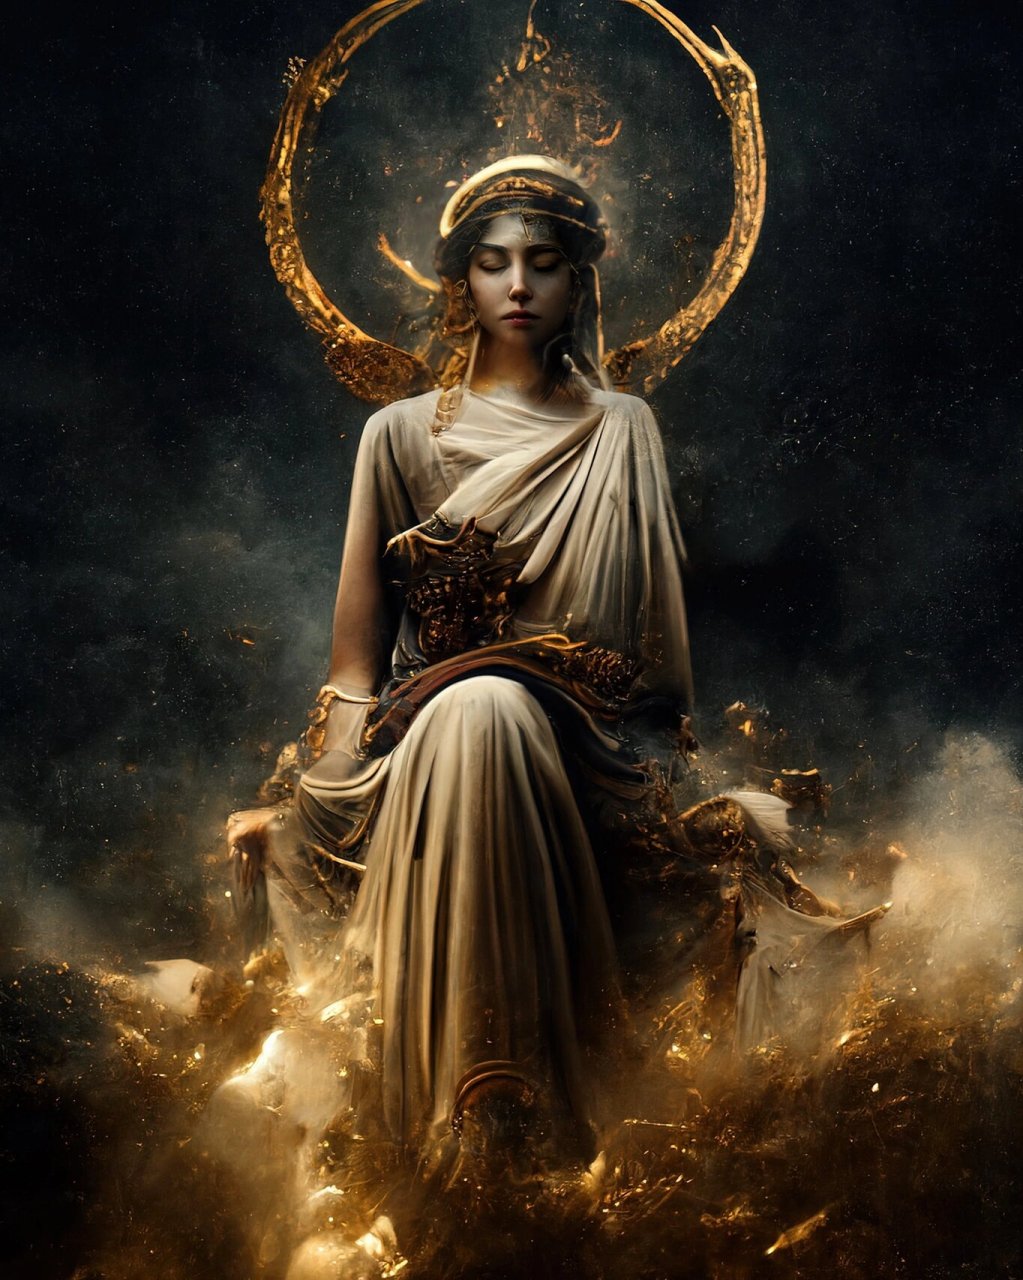 希腊众神·雅典娜 雅典娜是希腊神话中的智慧女神和战争女神